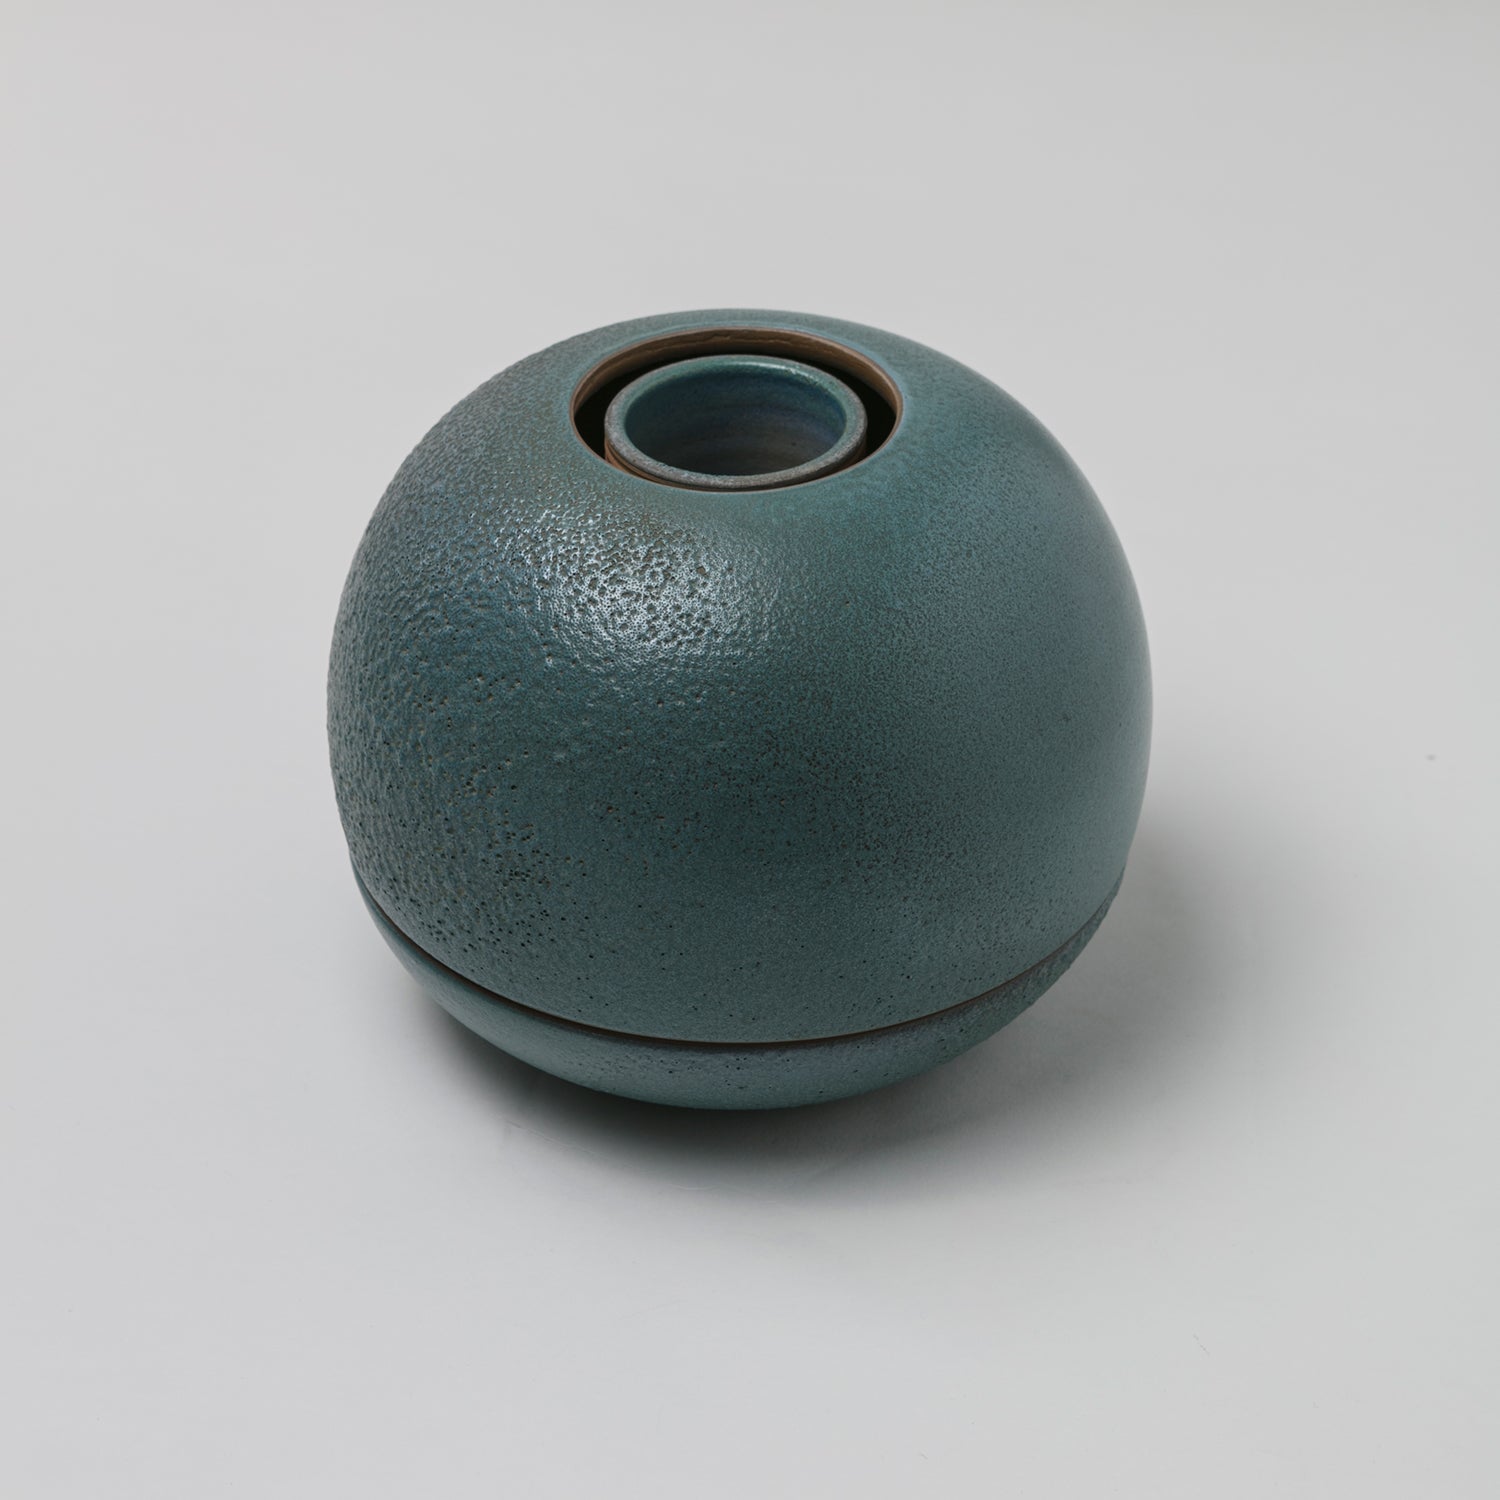 Glazed Ceramic Vase by Franco Bucci for Laboratorio Pesaro, Italy, 1970s